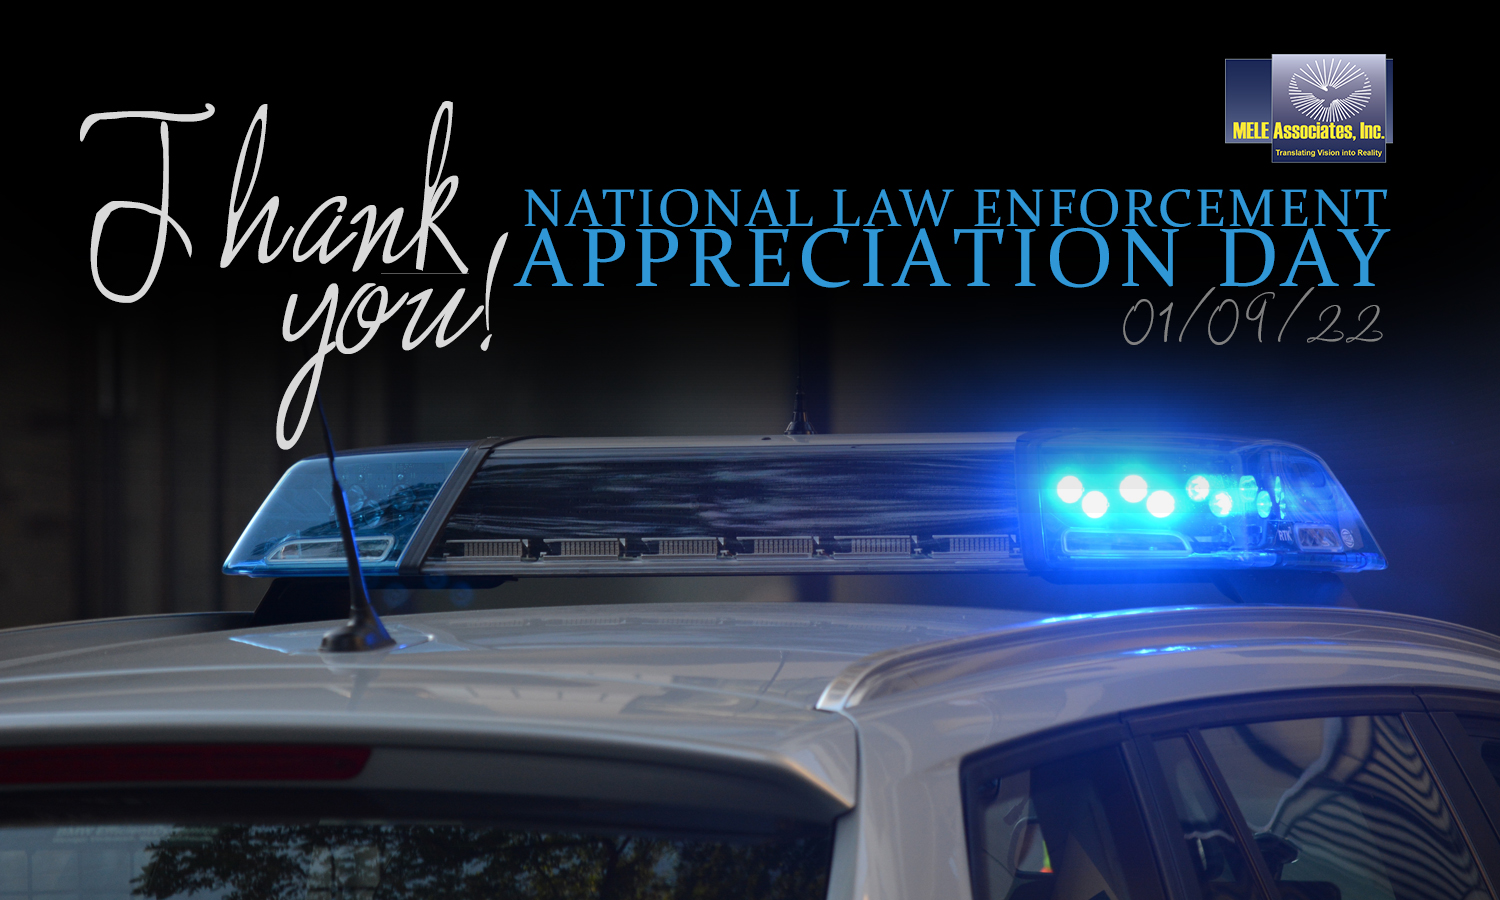 National Law Enforcement Appreciation Day 2022 - MELE Associates, Inc.